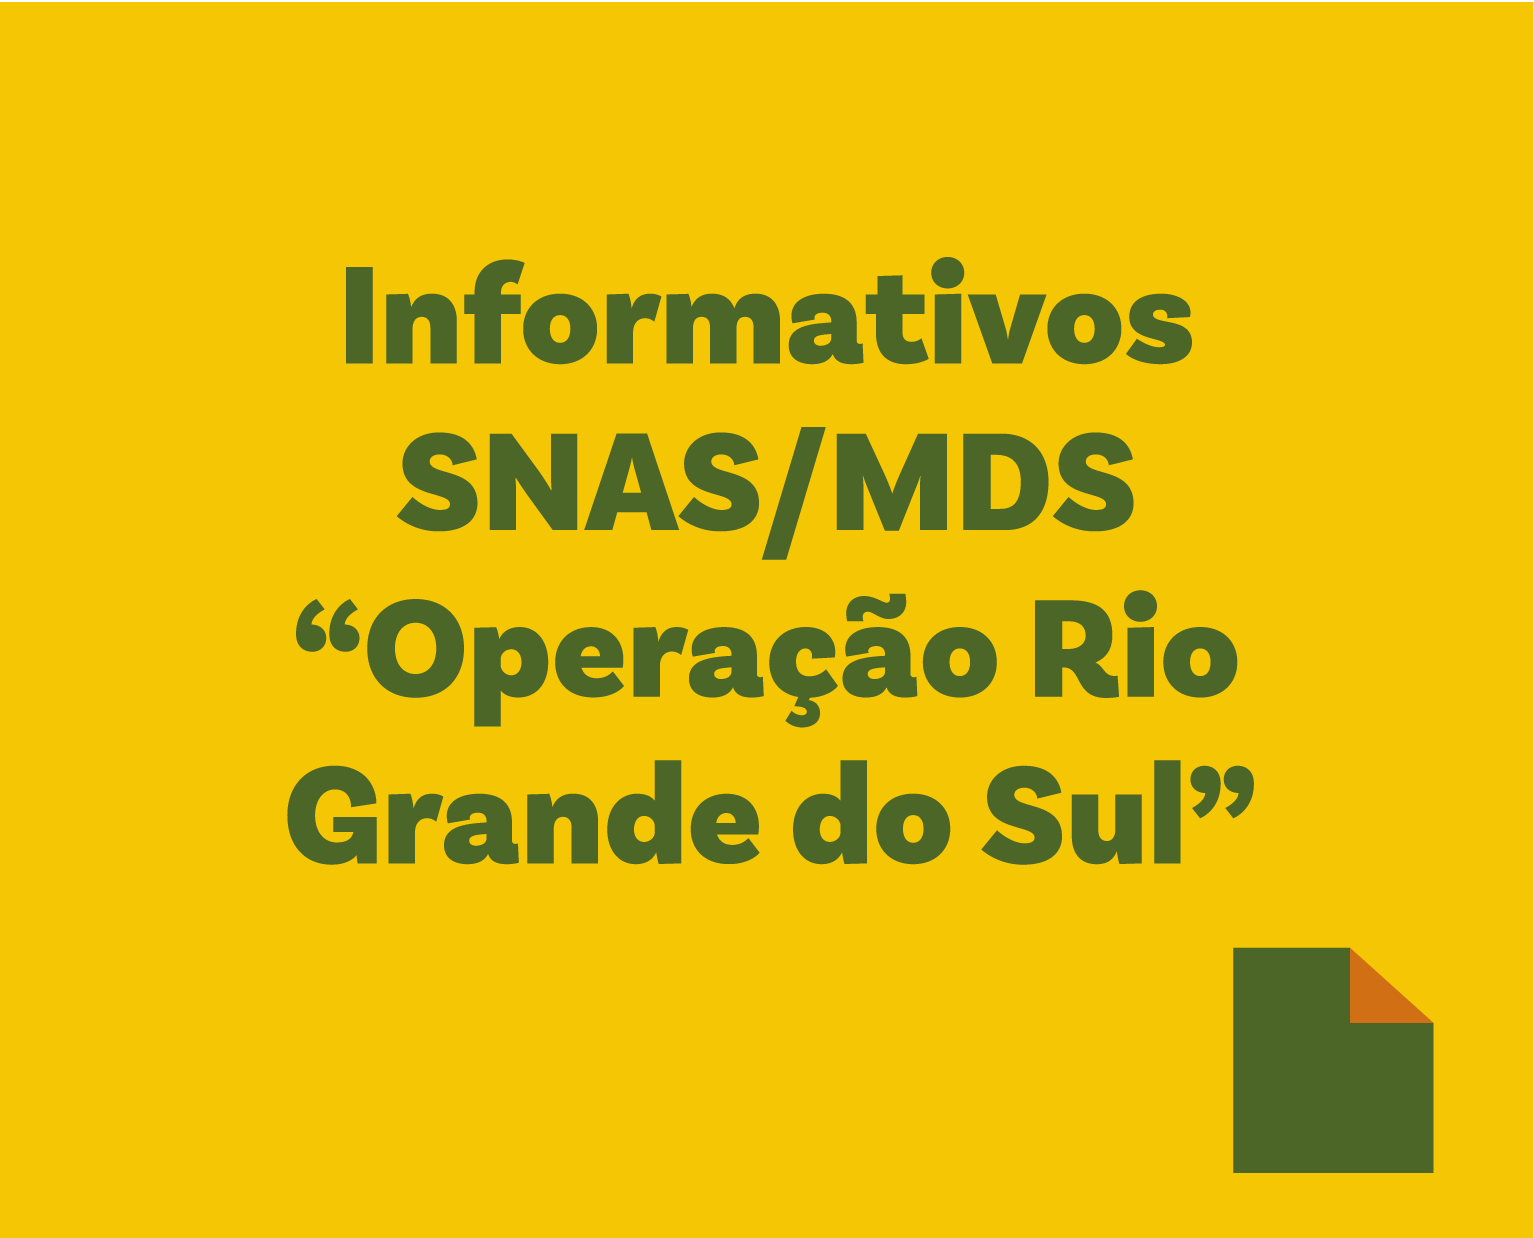 Informativos SNAS/MDS “Operação Rio Grande do Sul”